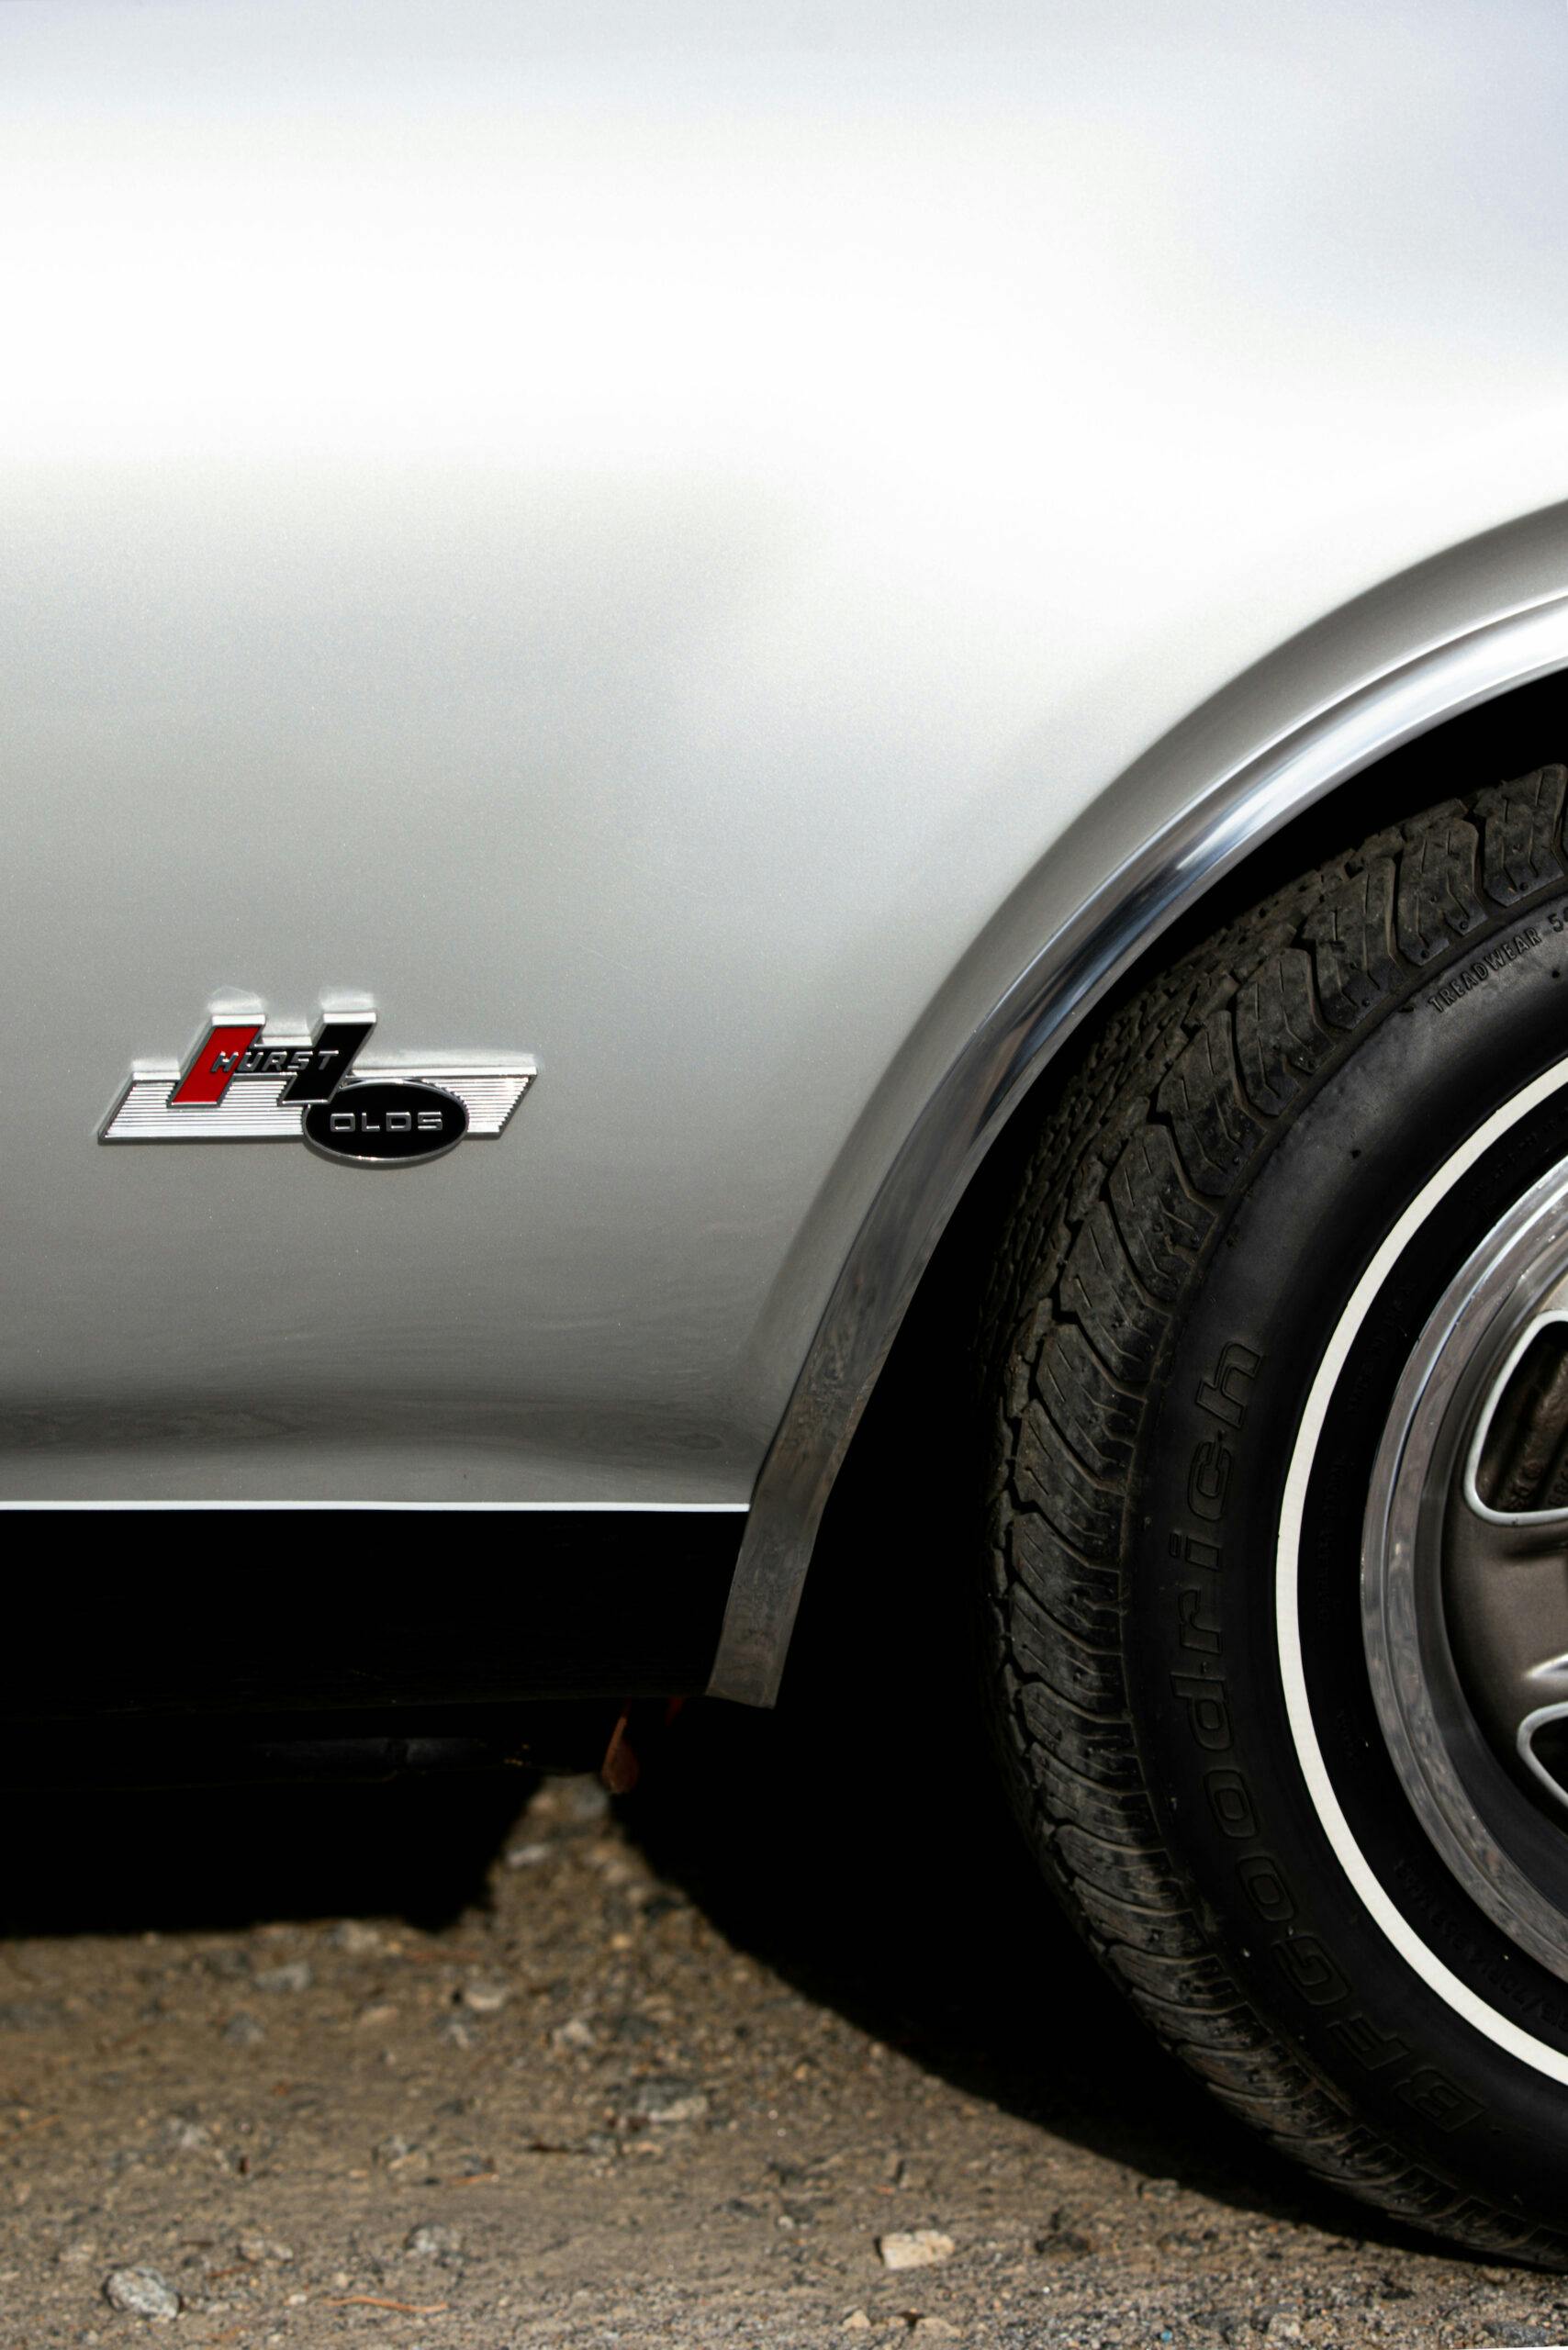 1968 Hurst Oldsmobile quarter panel badge